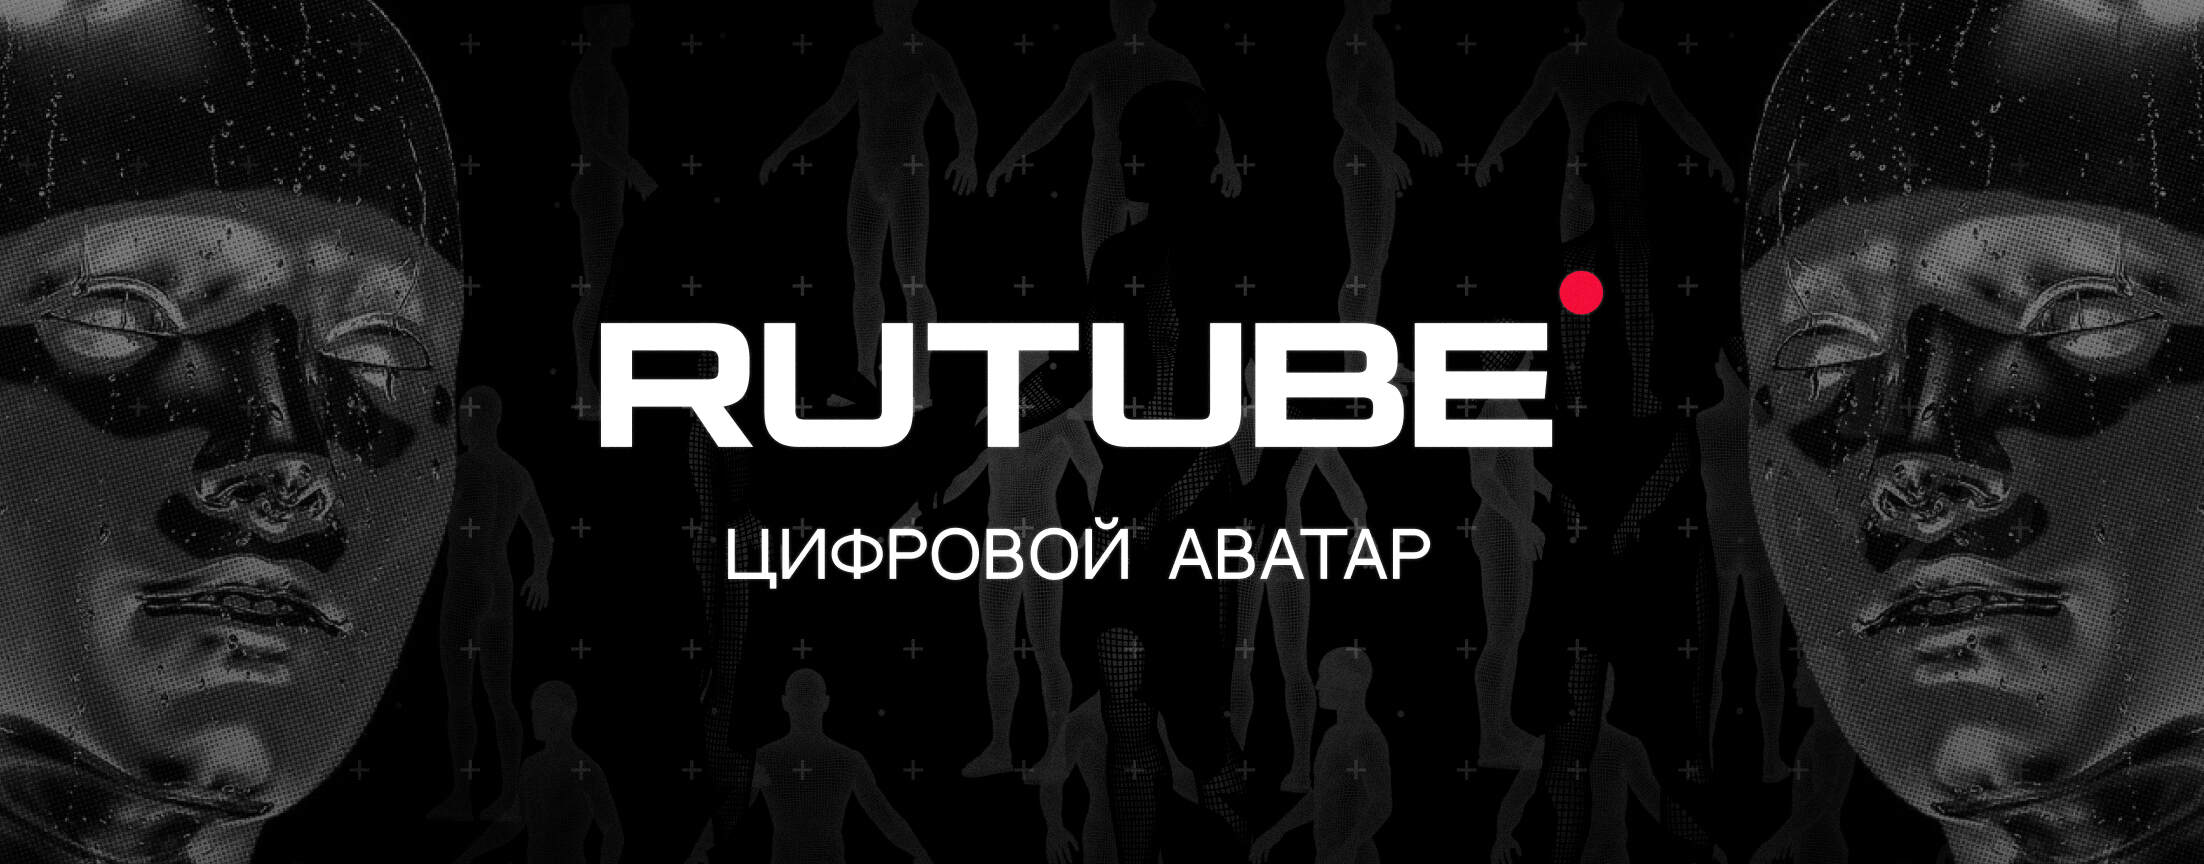 Цифровой аватар RUTUBE